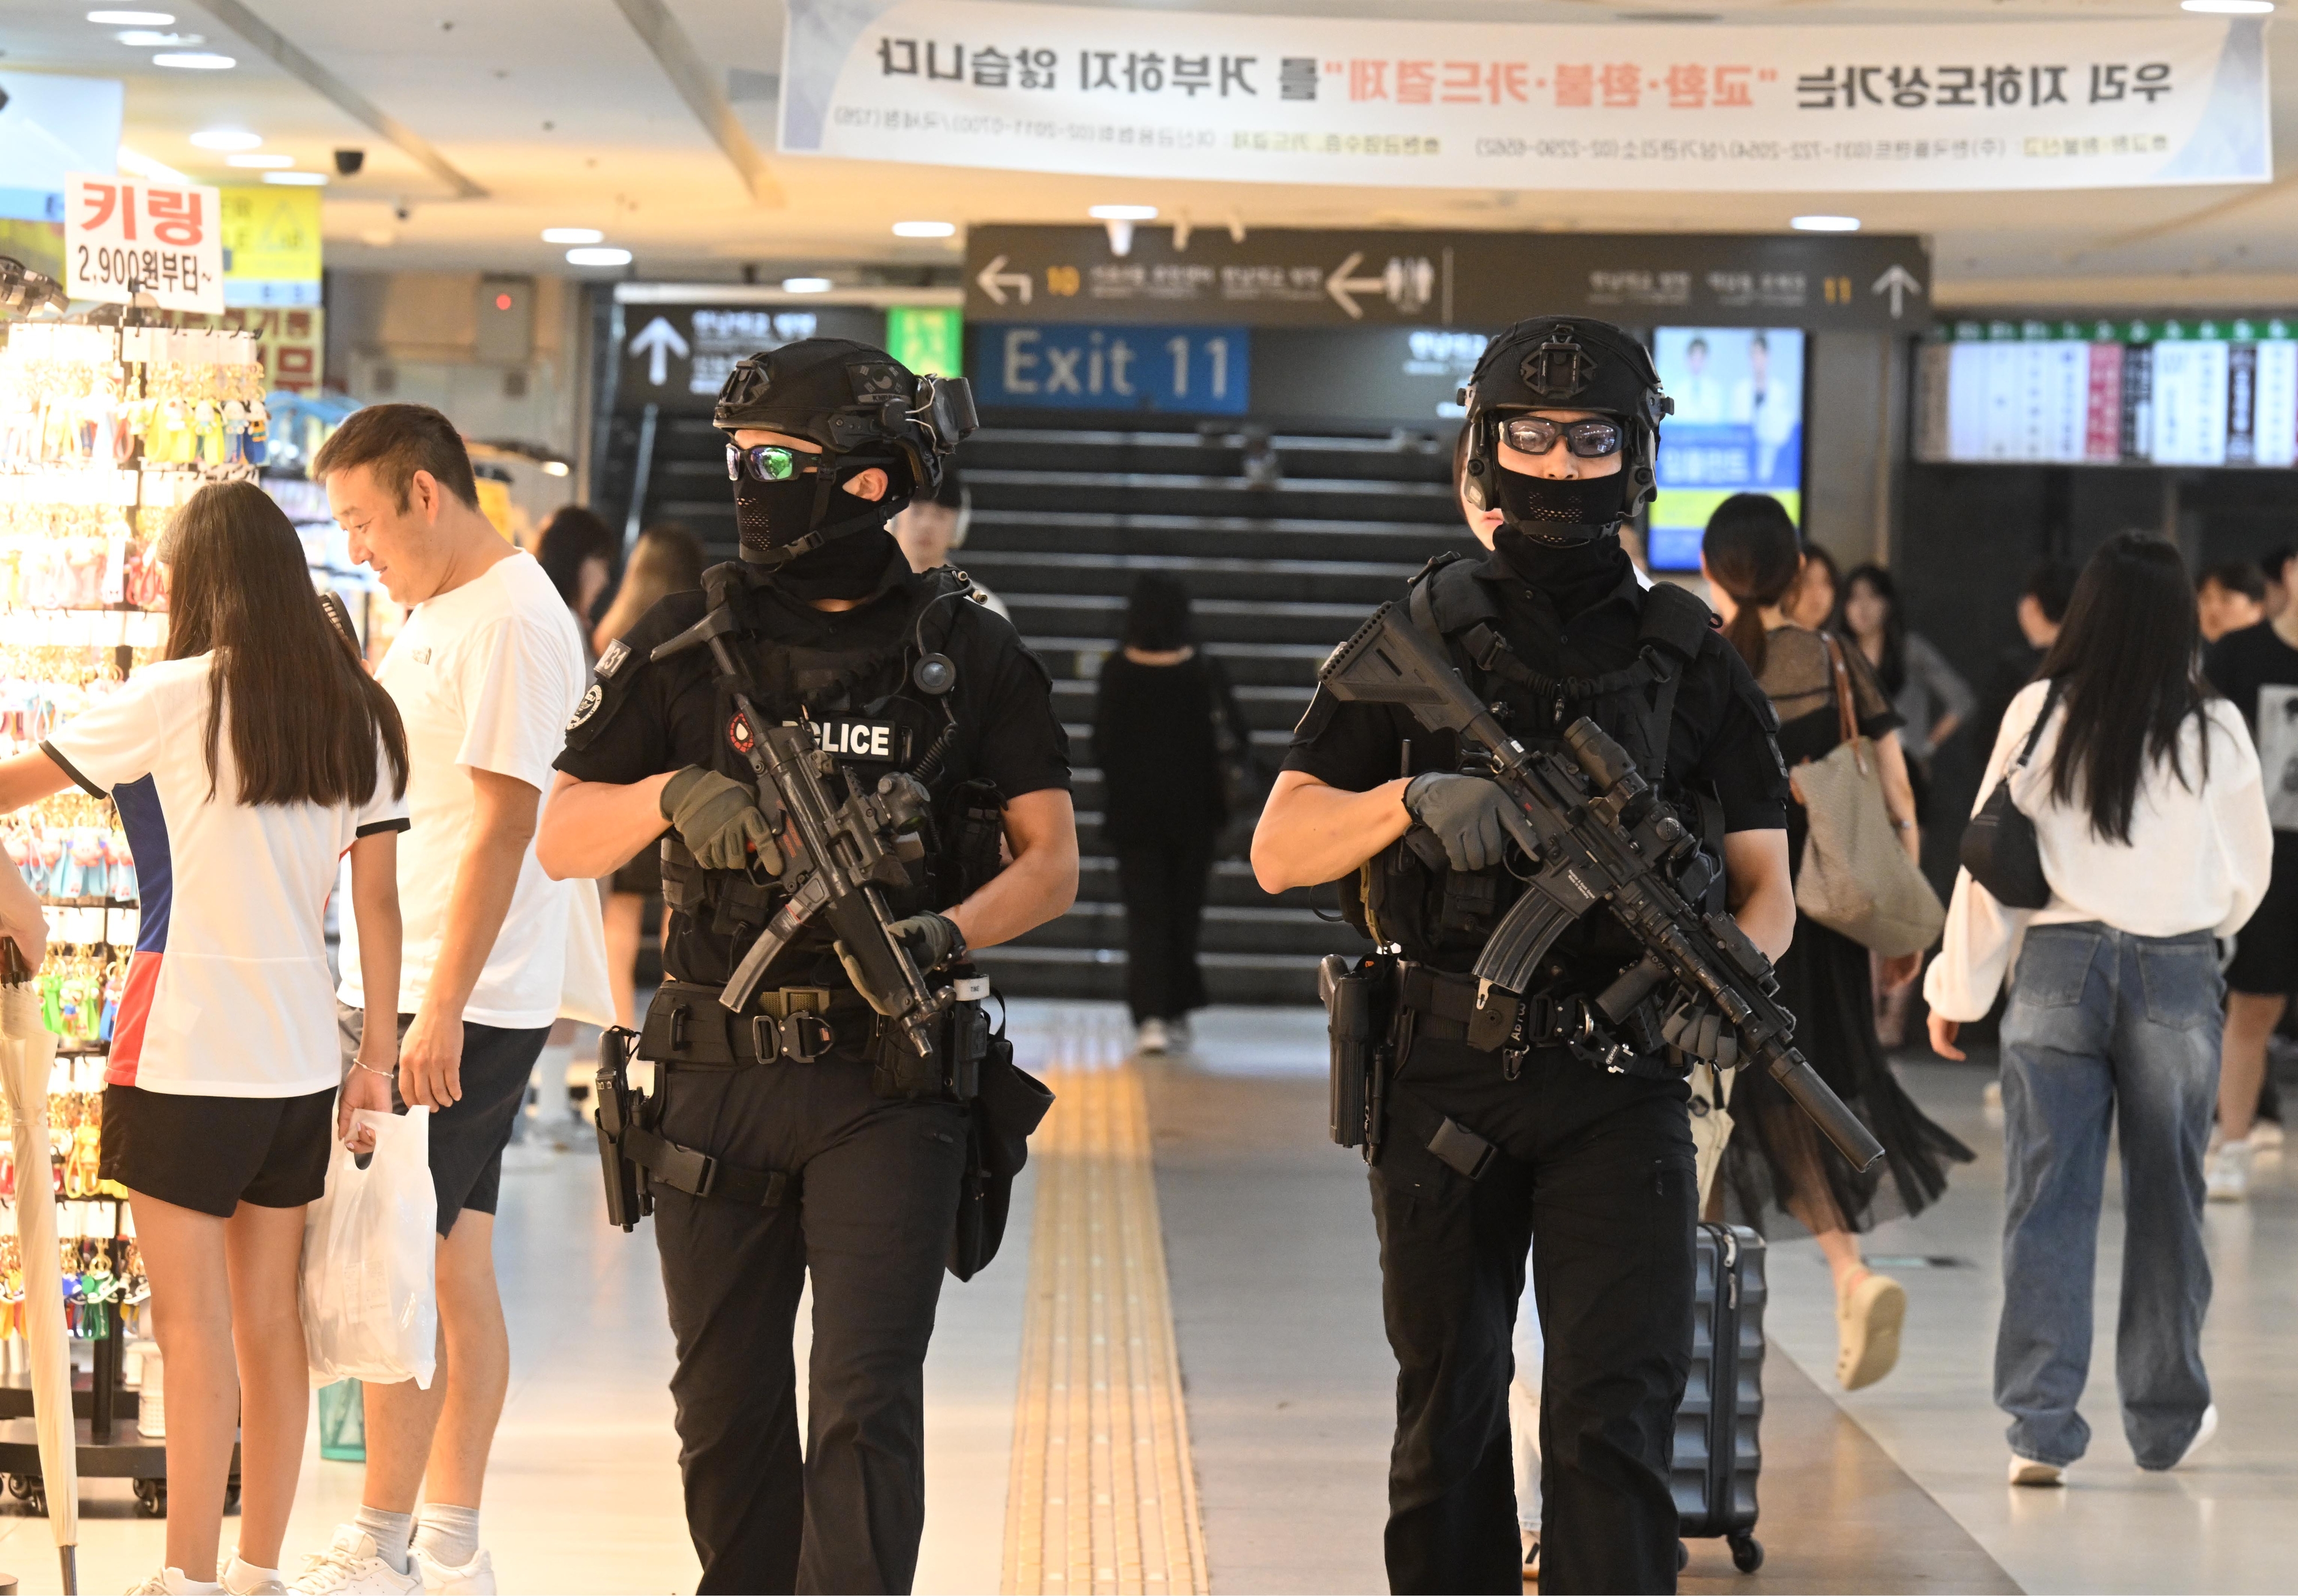 묻지마 칼부림’ 사건으로 시민 불안감이 커지고 있는 6일 서울 강남역 인근에서 경찰특공대원들이 순찰을 하고 있다. 안주영 전문기자